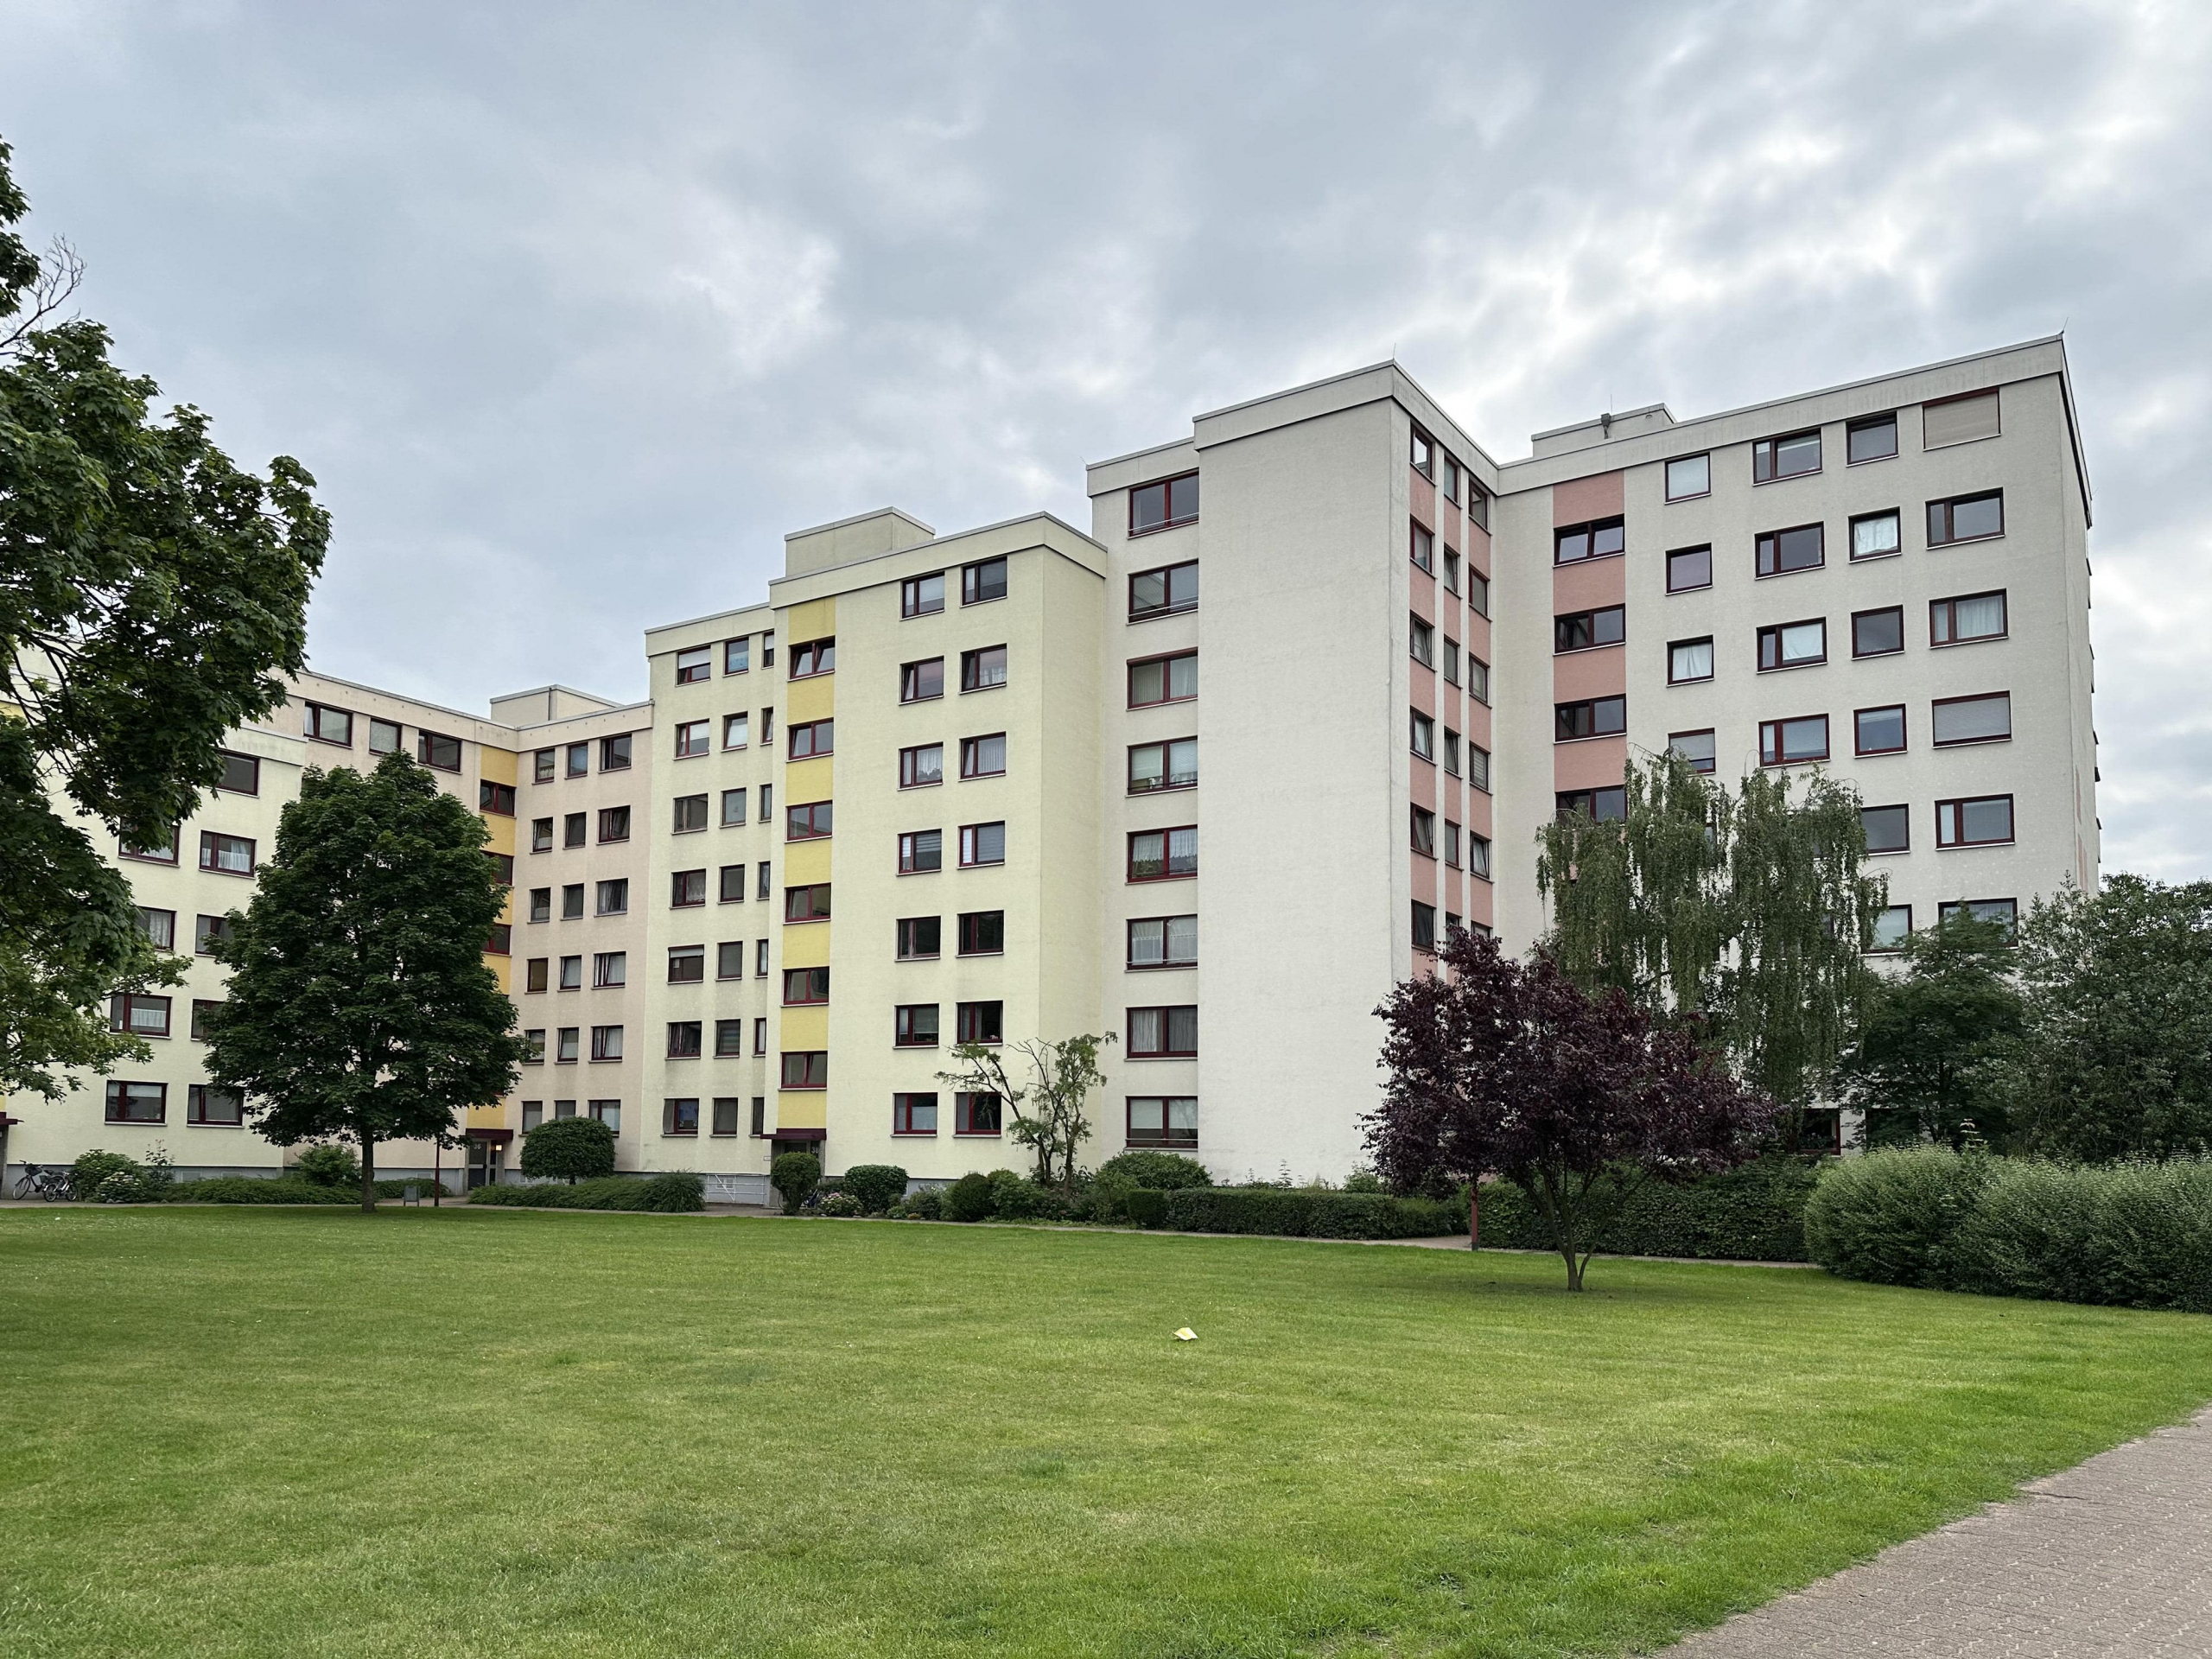 Geräumige 2-Zimmer-Erdgeschosswohnung mit Loggia, 30916 Isernhagen, Erdgeschosswohnung